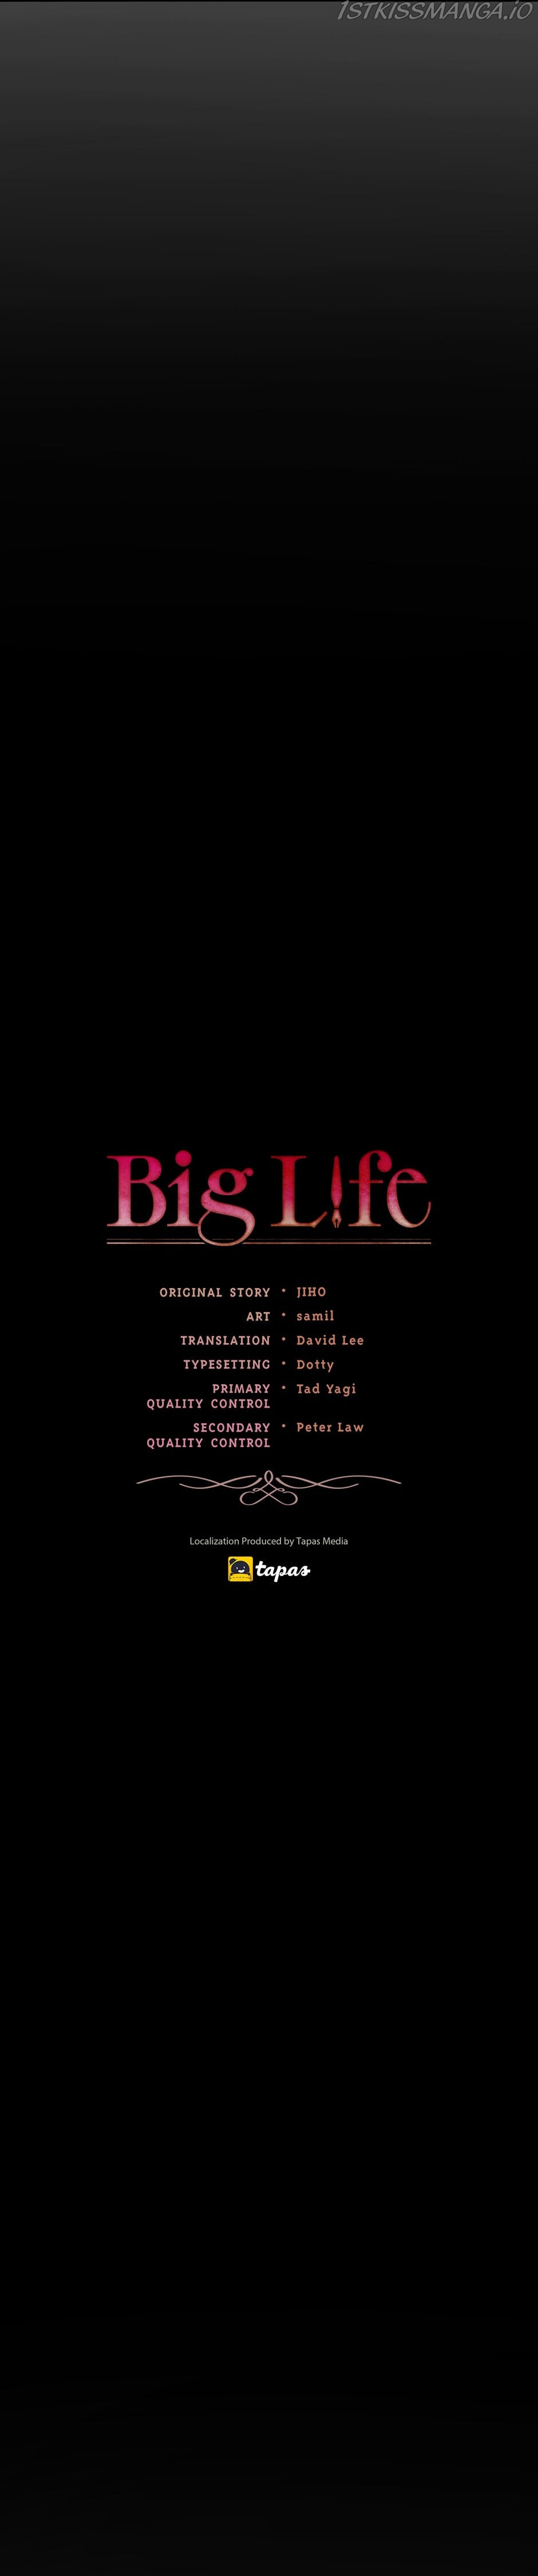 Big Life - Page 3